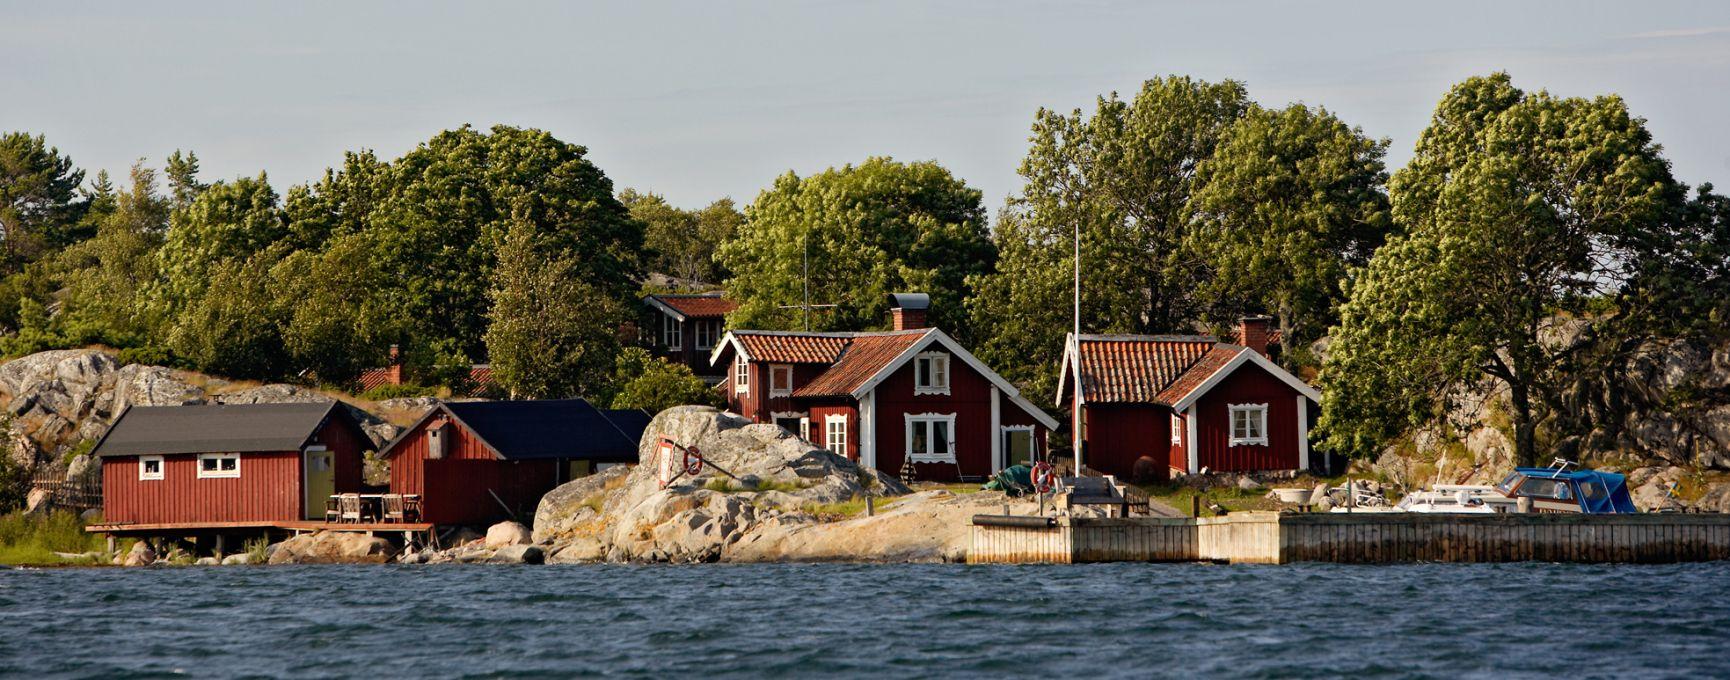 Röda hus på Bullerö klippor.